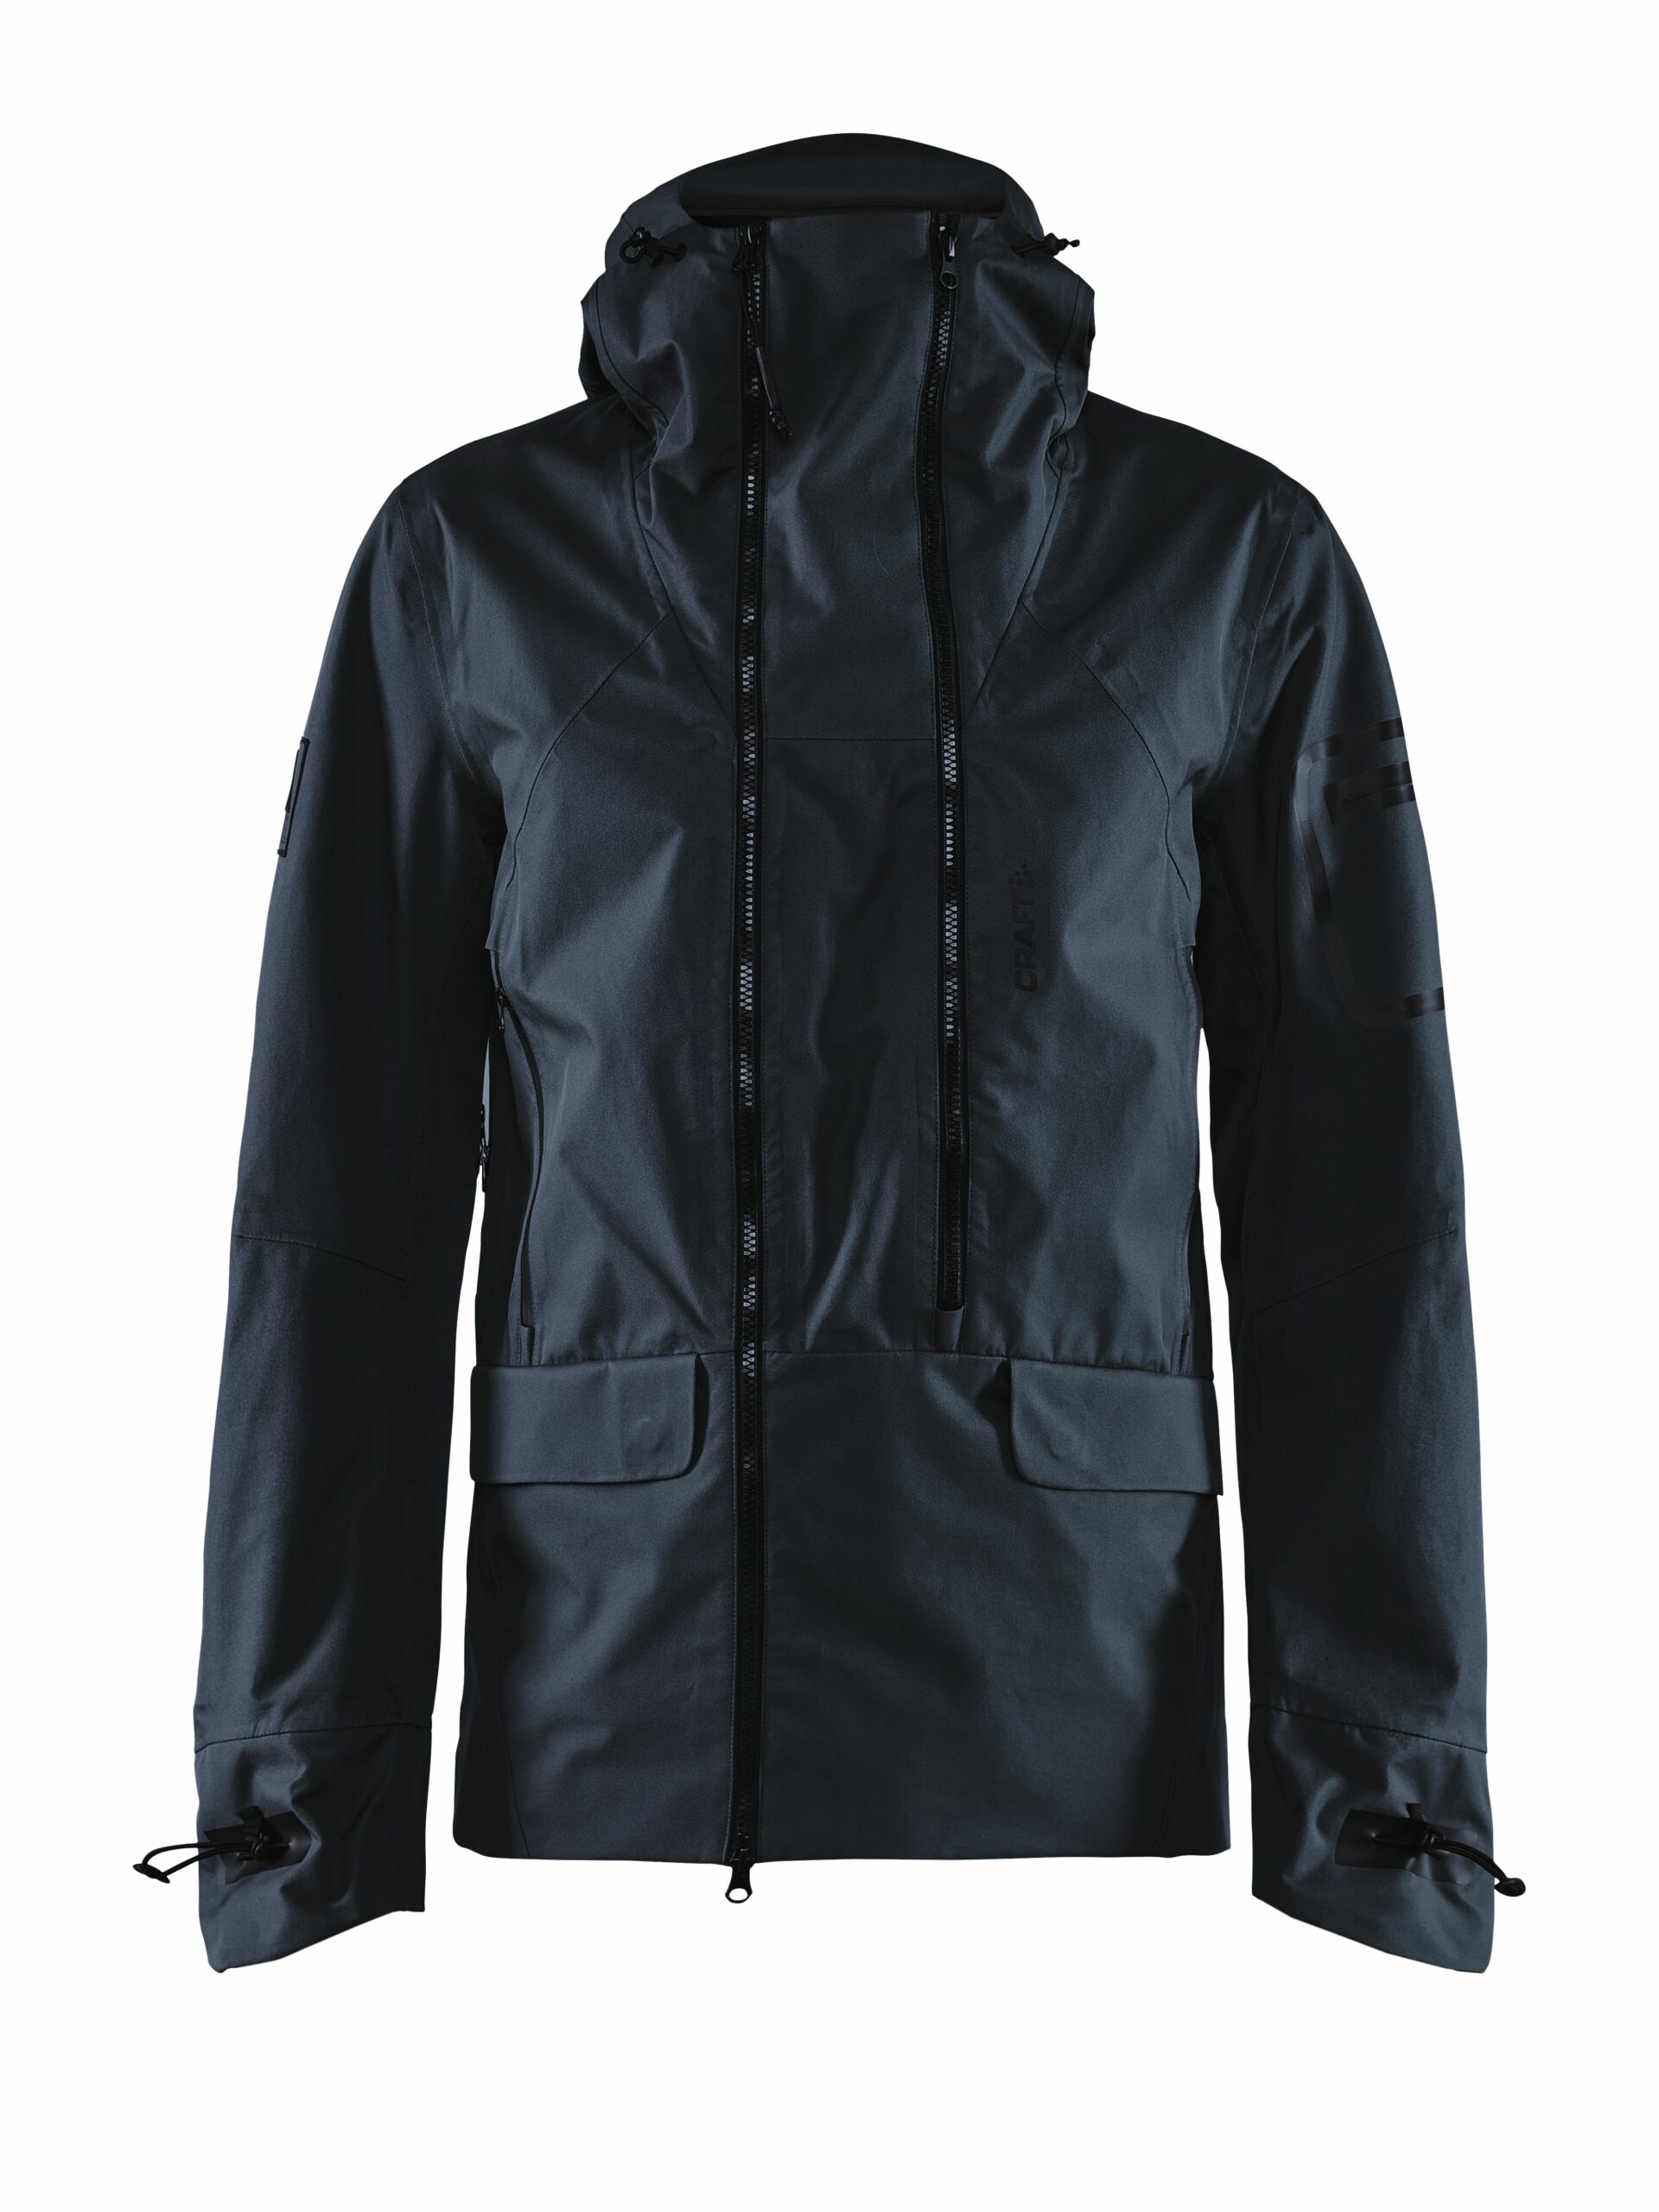 Craft - Polar shell jacket Maend - Black XXL